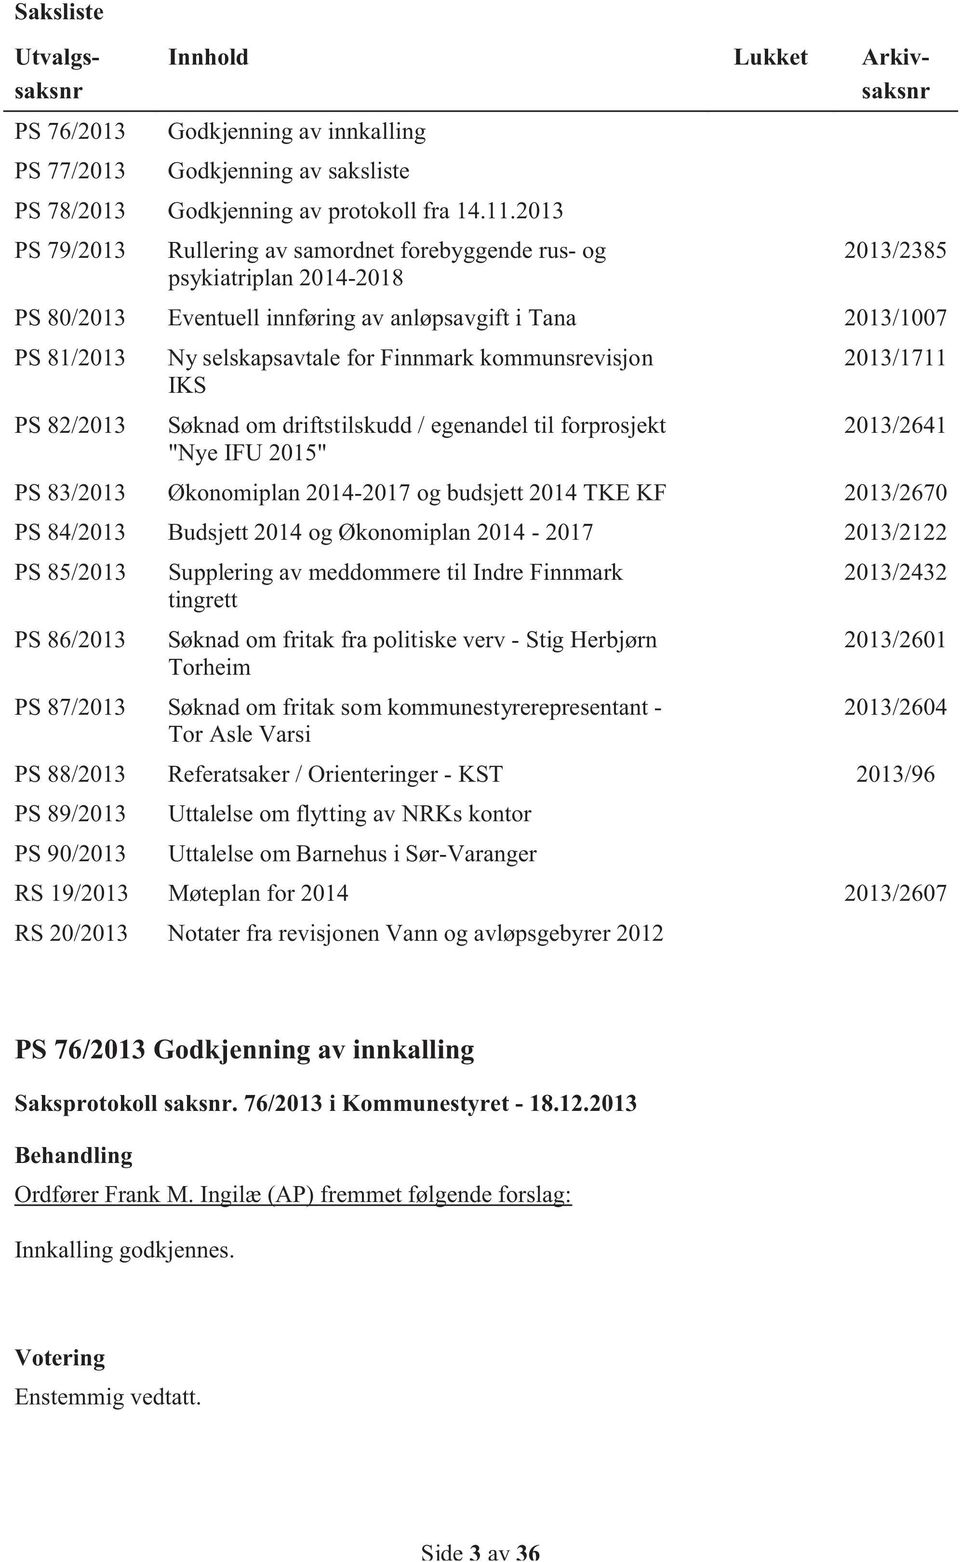 kommunsrevisjon 2013/1711 IKS PS 82/2013 Søknad om driftstilskudd / egenandel til forprosjekt 2013/2641 "Nye IFU 2015" PS 83/2013 Økonomiplan 2014-2017 og budsjett 2014 TKE KF 2013/2670 PS 84/2013